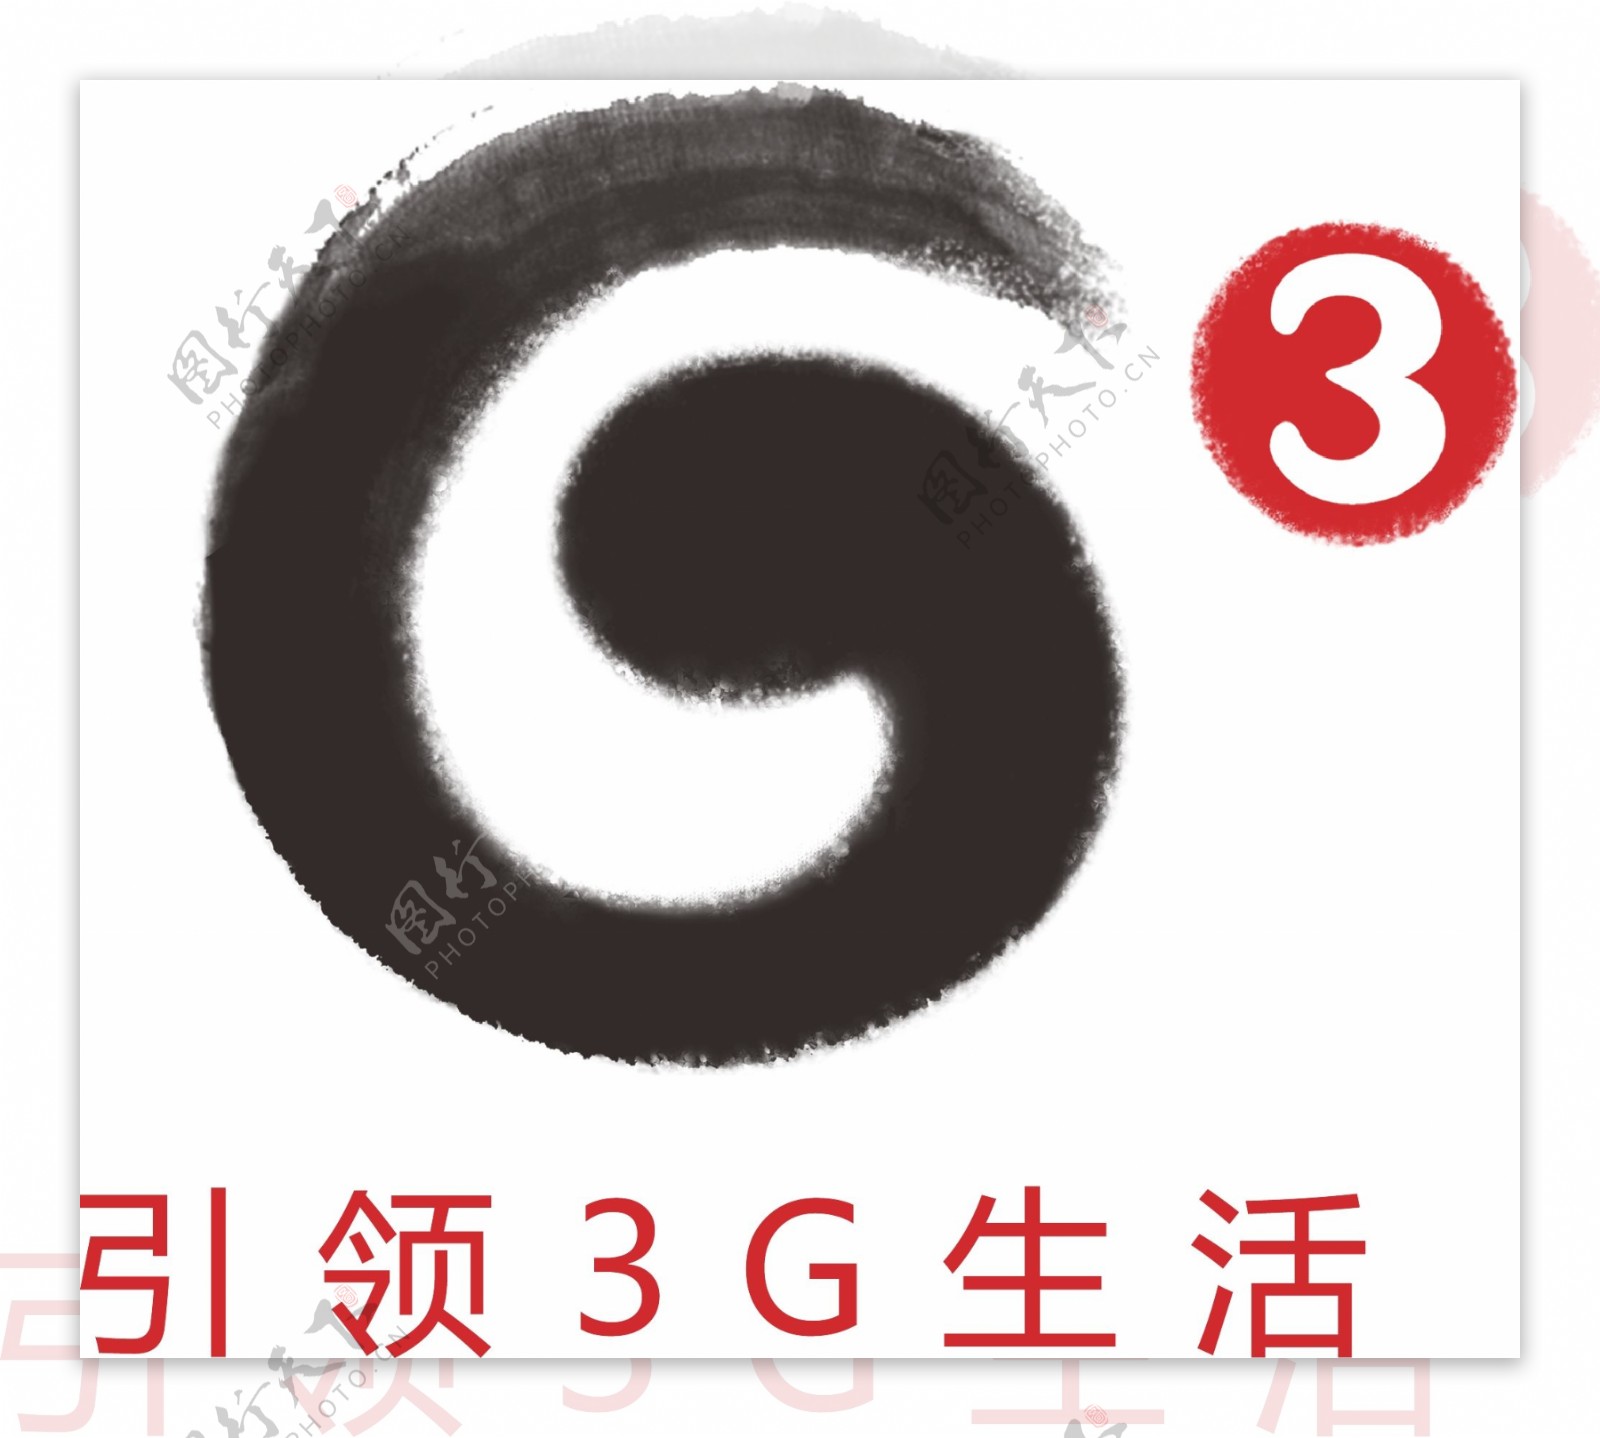 中国移动3G标志矢量设计